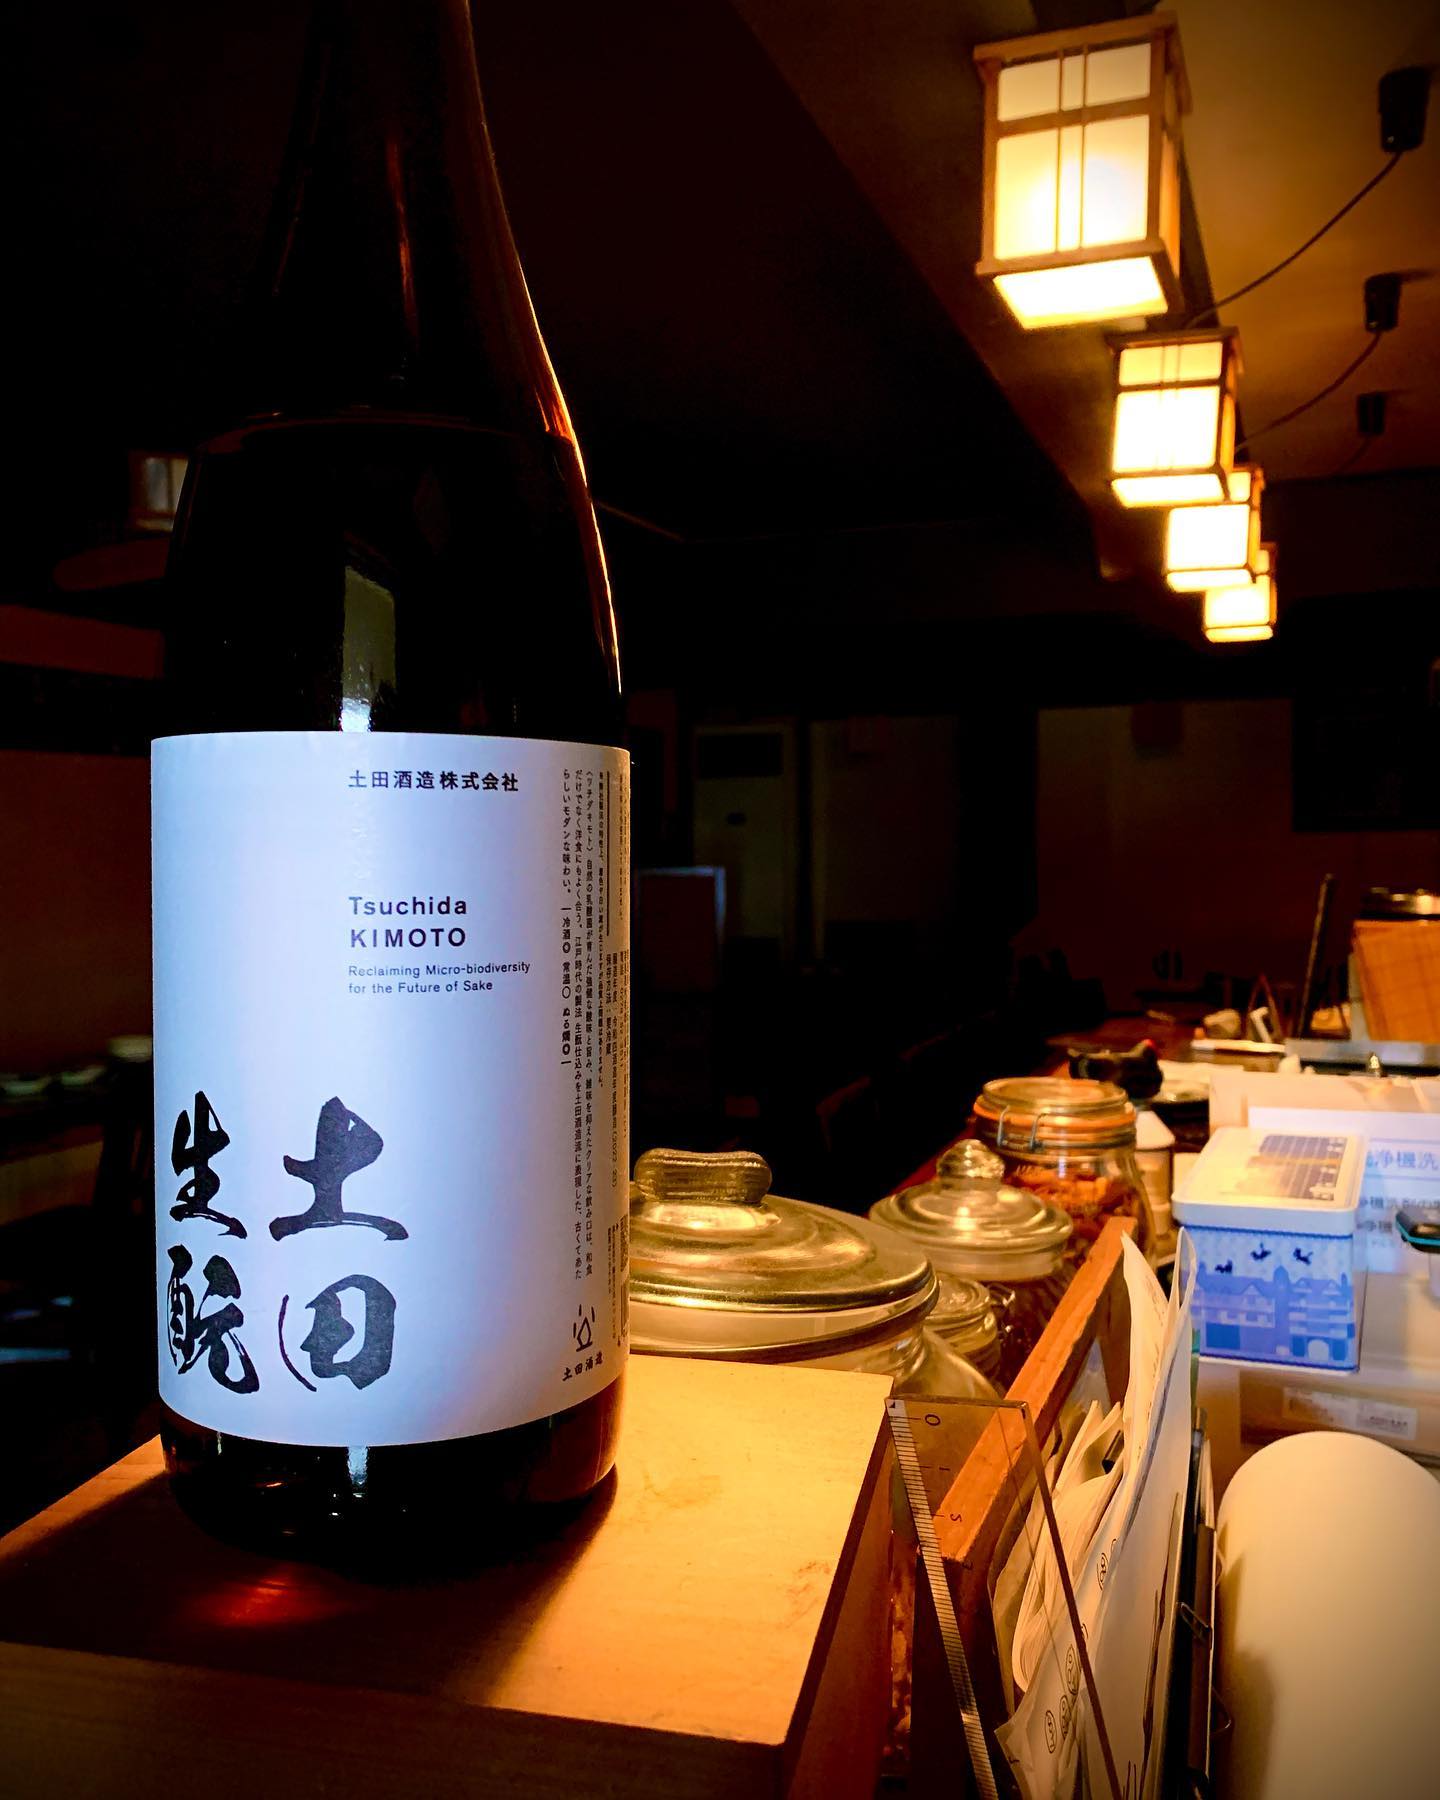 まだまだ寒い夜暖かい日本酒で1杯いかがでしょうか
熱燗にぴったりなこの1杯
「土田」
土田特有のあの香り 熱燗になってより強く感じられいい夜になること間違え無しです。
売り切れ御免なので気になった方はお早めに
   #